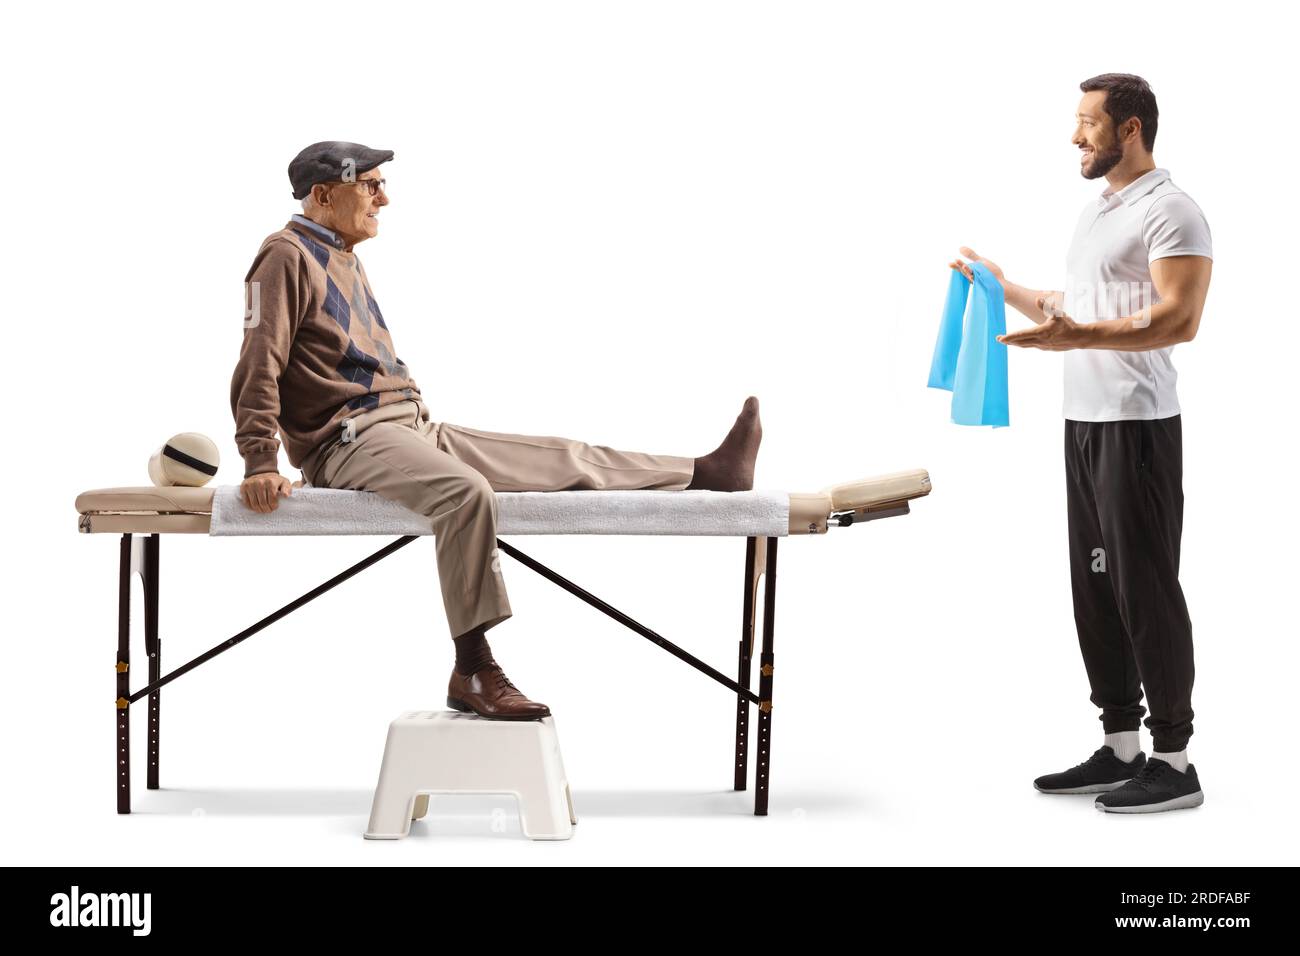 Physiothérapeute avec une bande étirable parlant à un patient adulte masculin isolé sur fond blanc Banque D'Images